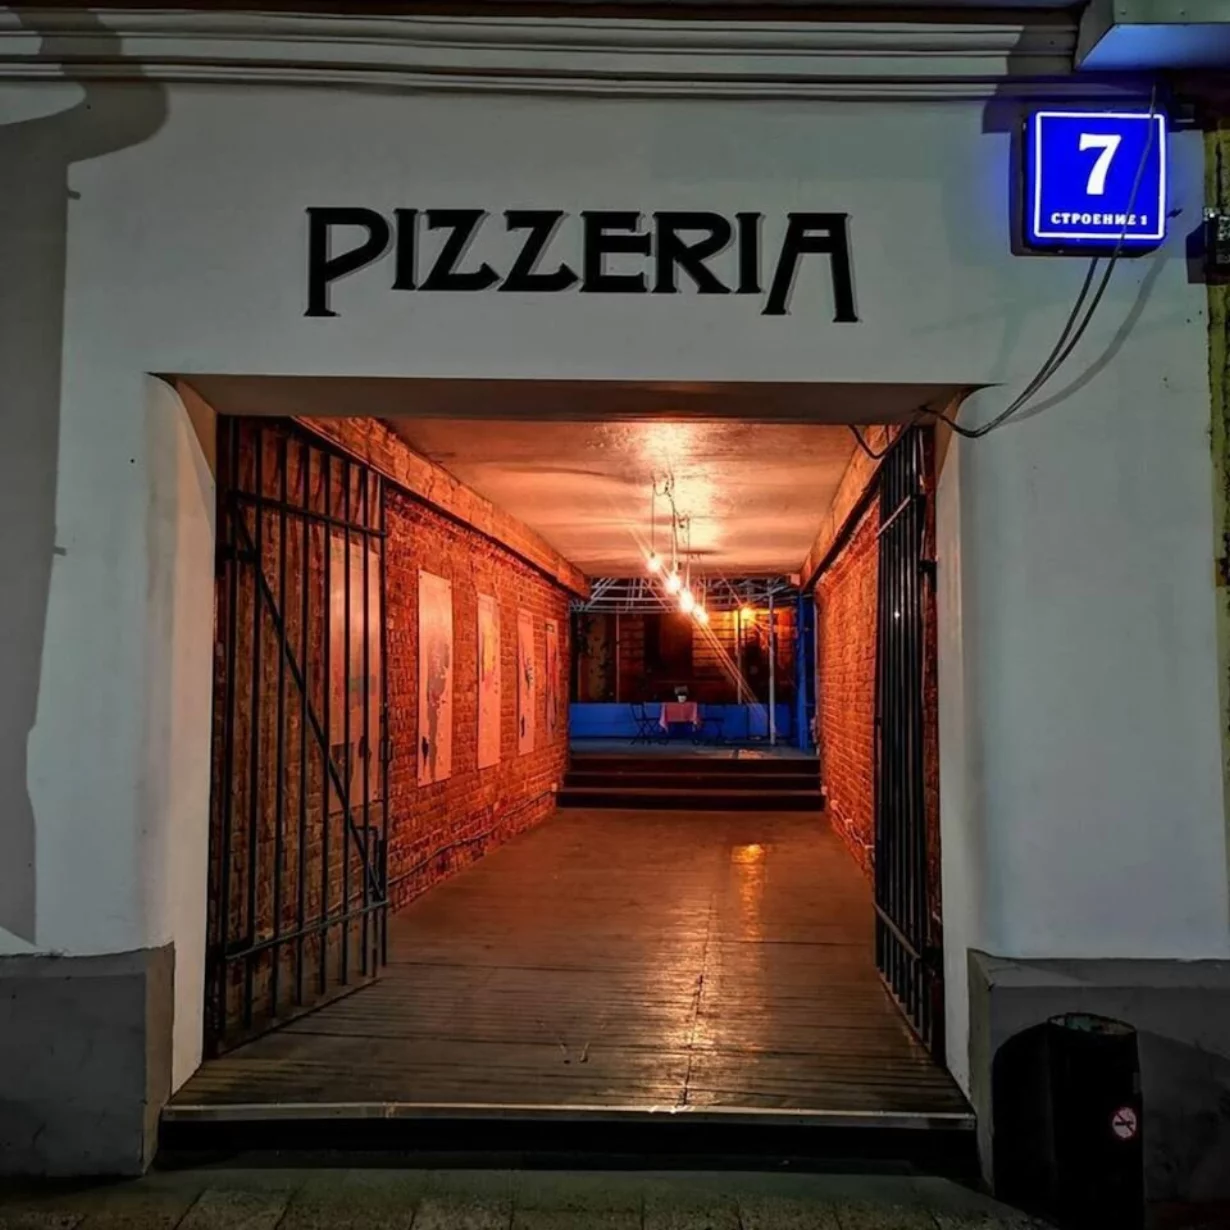 Интерьер/Экстерьер/Банкетная зона/Бар/Стол для двоих/Вход/Главный зал/Lounge зона пиццерия Pizzeria фото